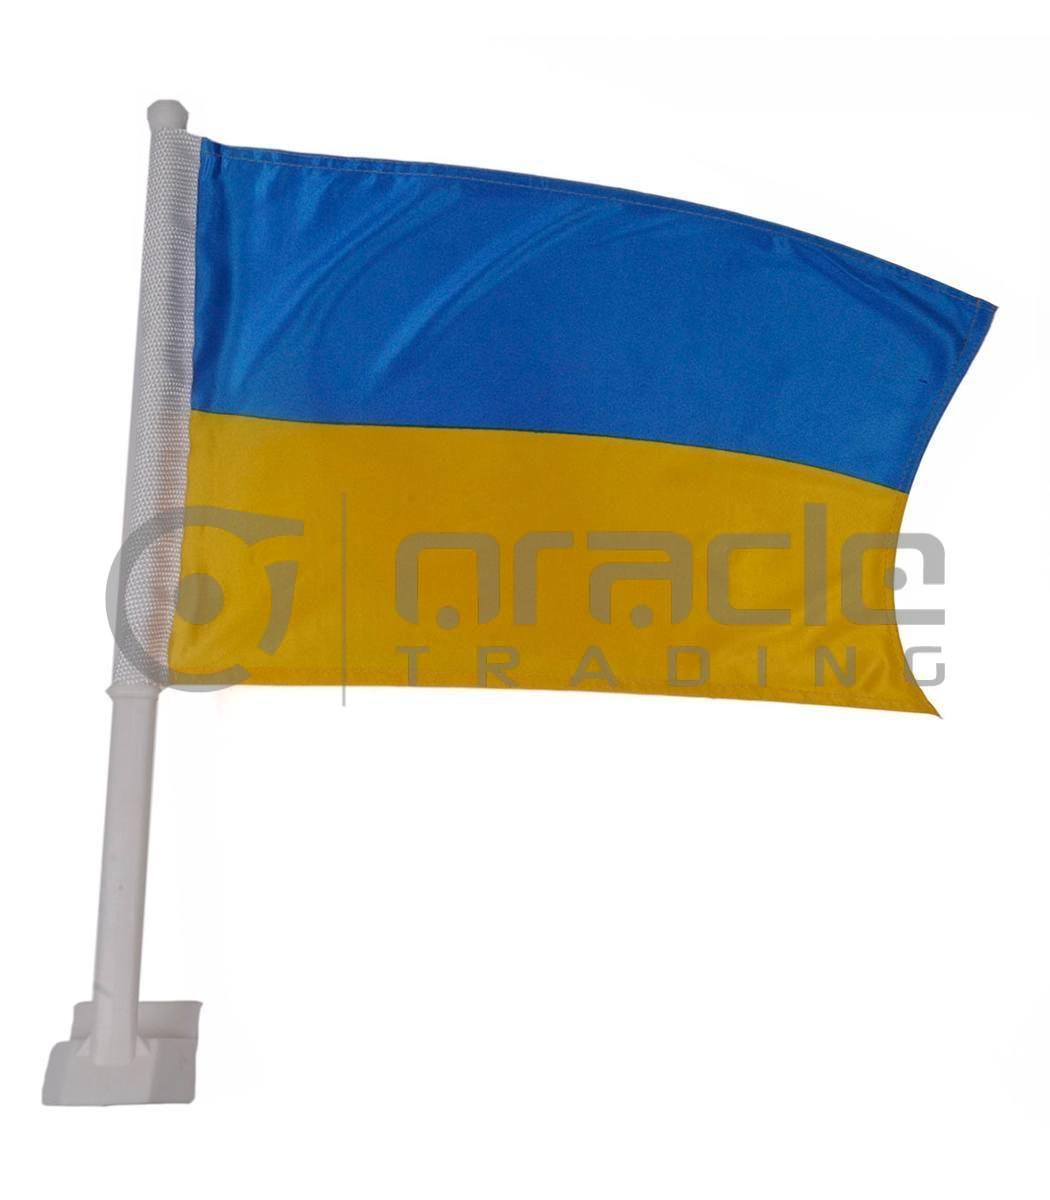 Ukraine Car Flag (Air Shipment Price)